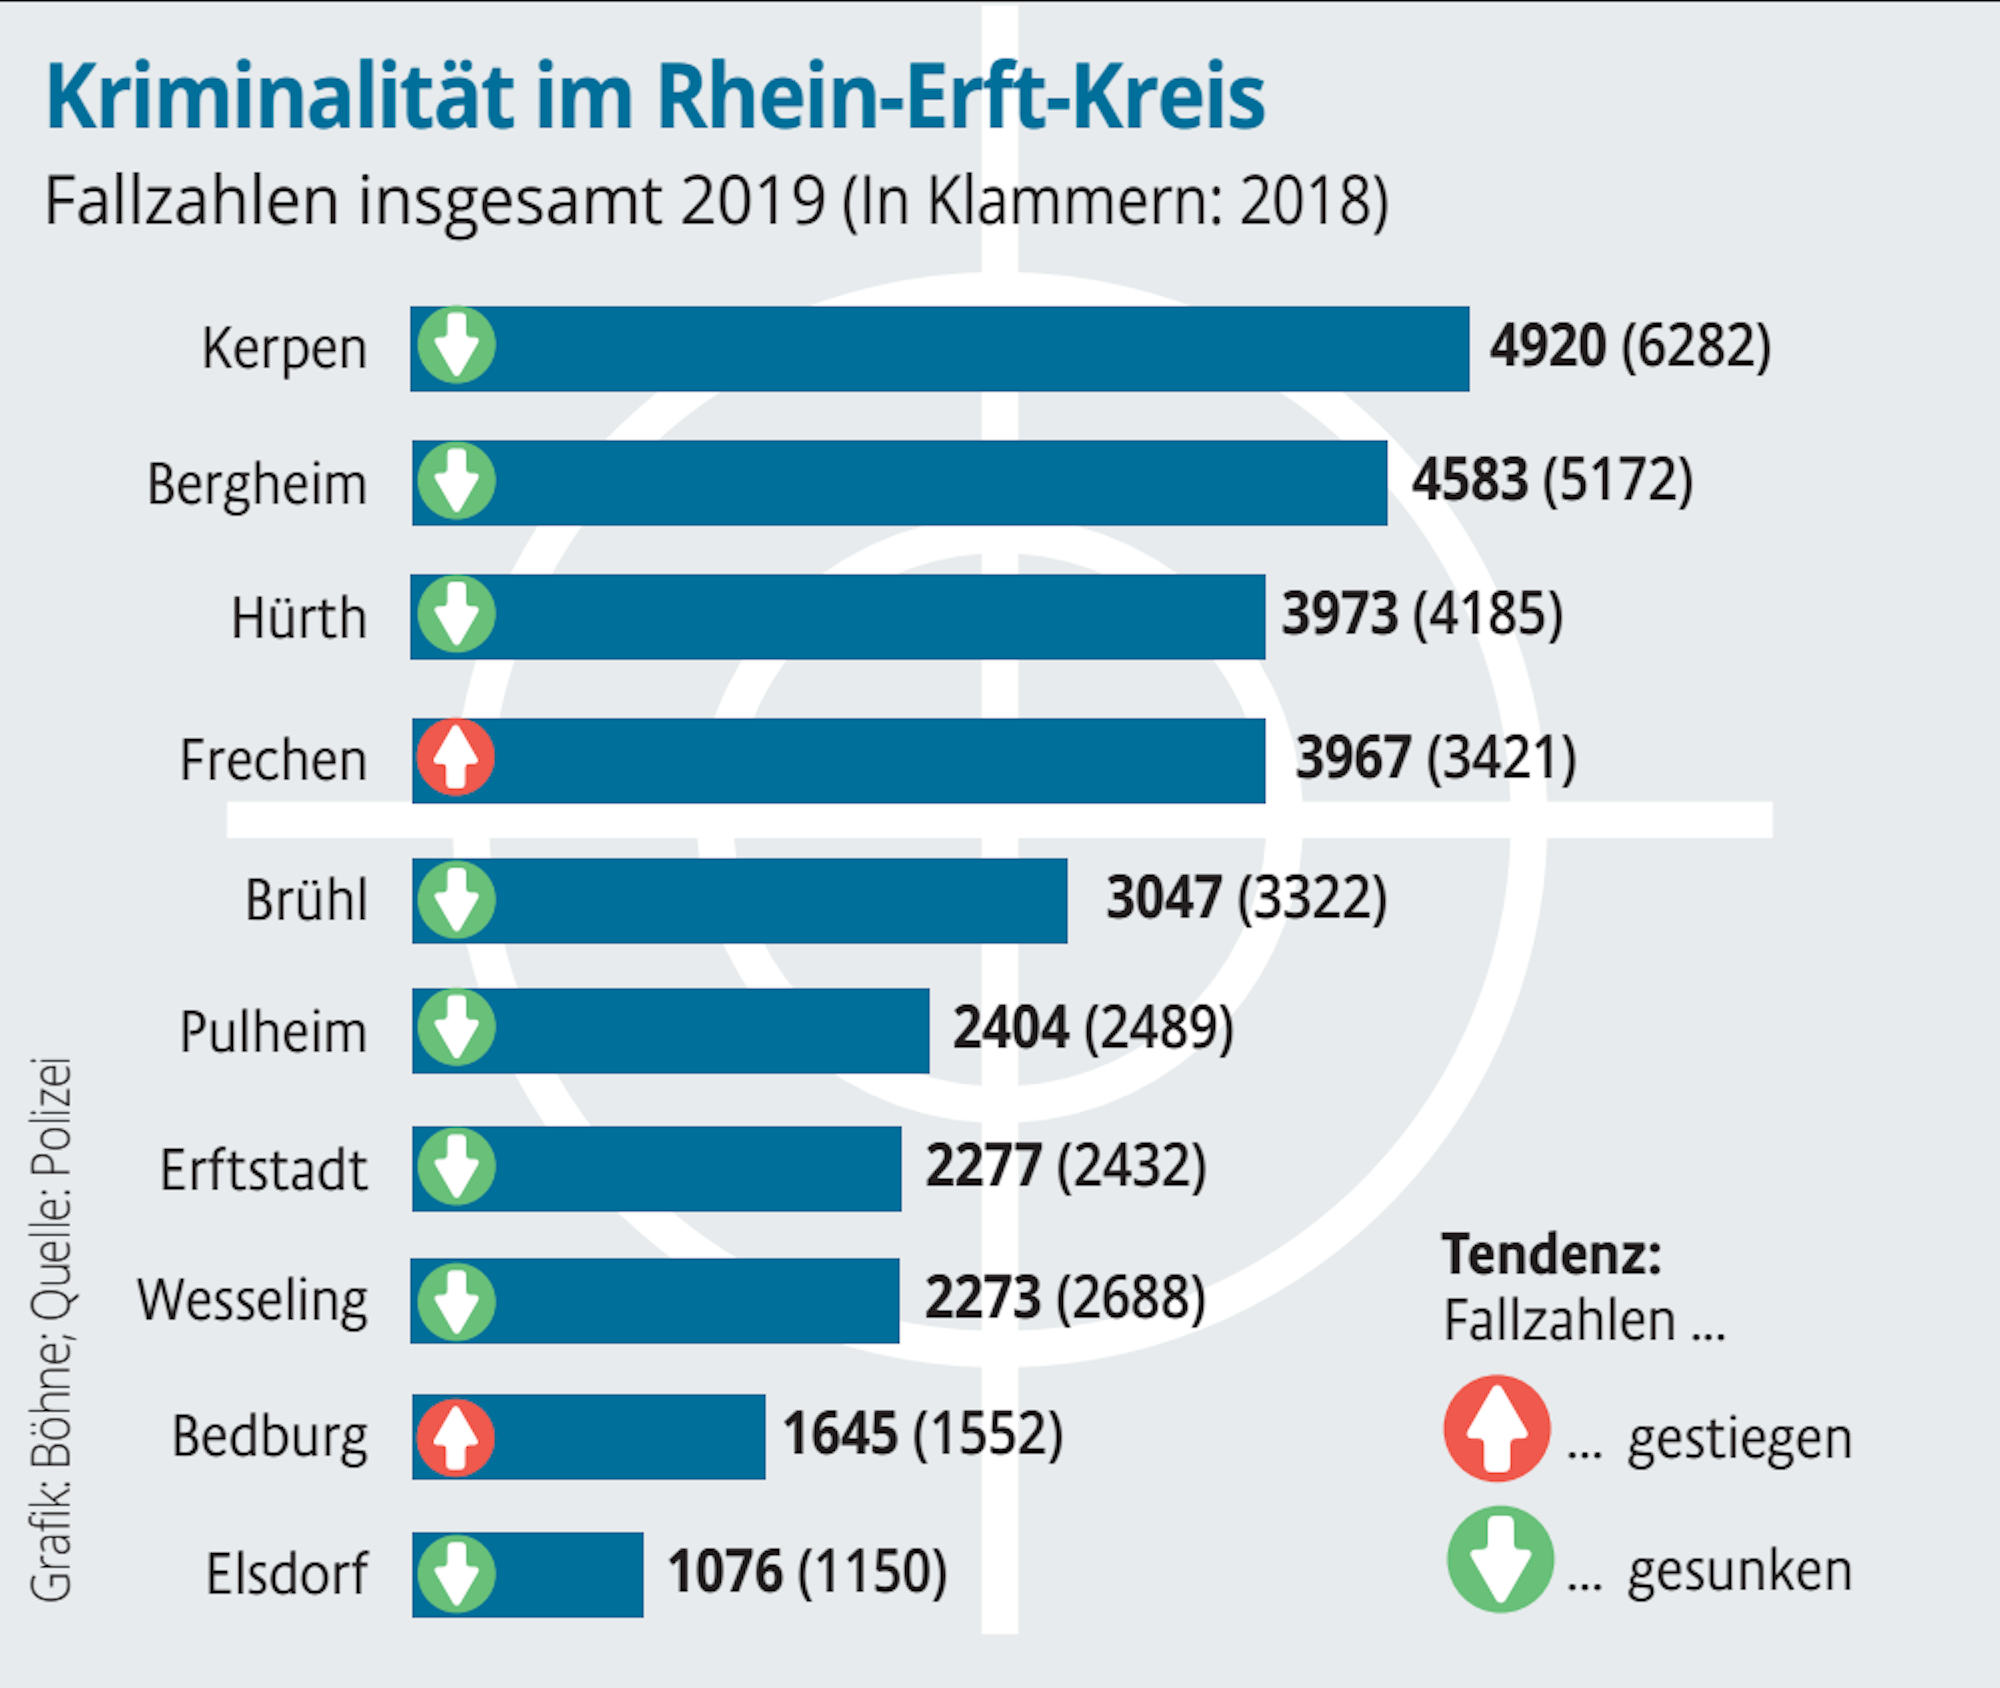 Tendenziell sinken die Fallzahlen im Kreis Rhein-Erft. 